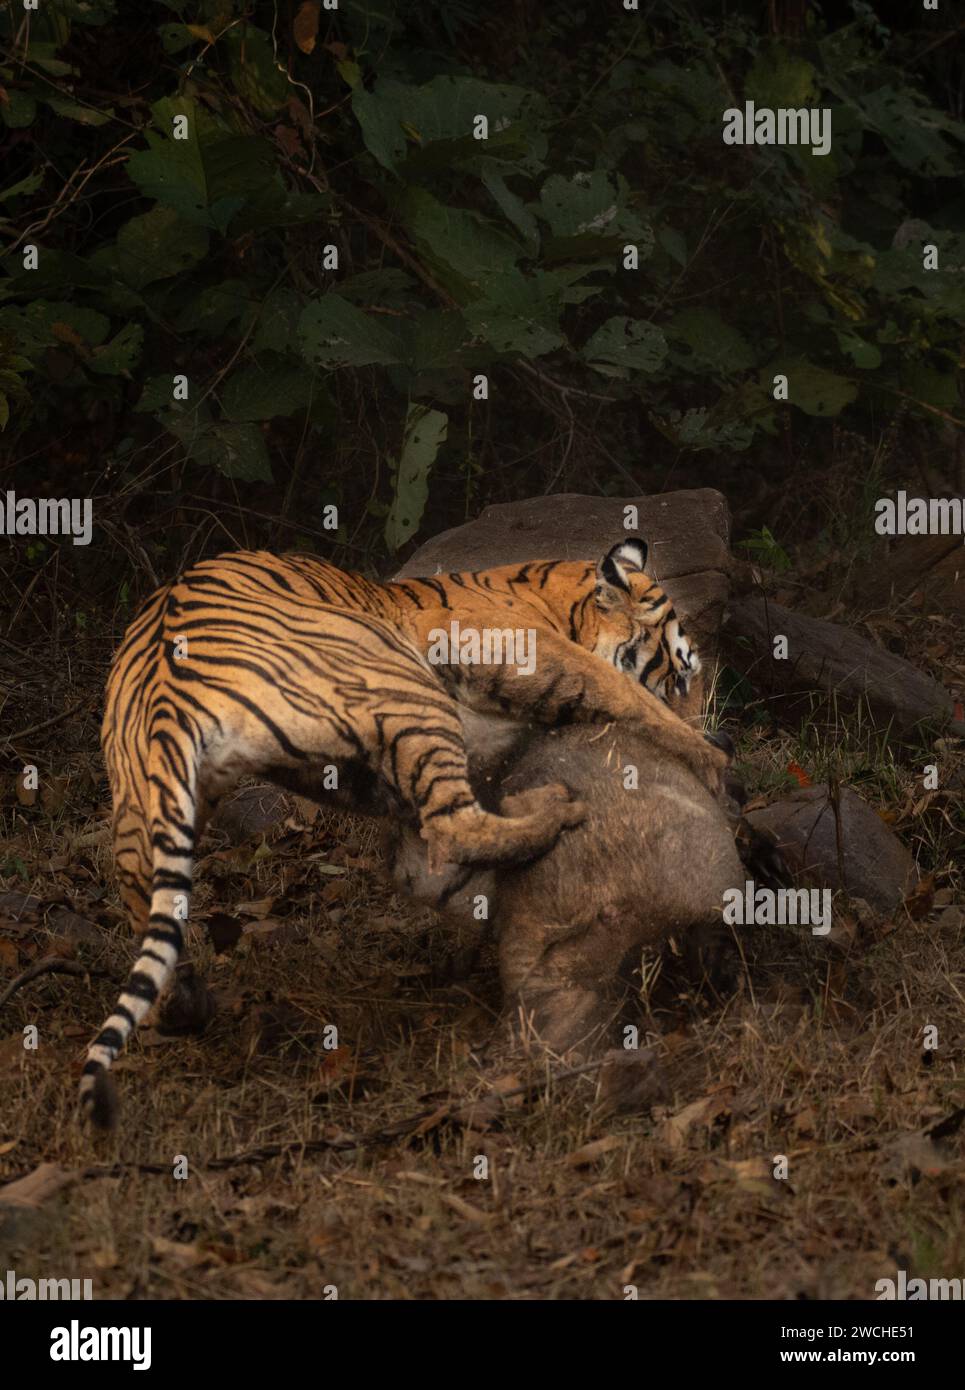 Die Wildschweine kämpfen mit aller Kraft INDIEN actiongeladene Bilder zeigen eine Tigerin, die am 7. Januar in Maharashtra, Indien, ein Wildschwein angreift. Das wig Stockfoto